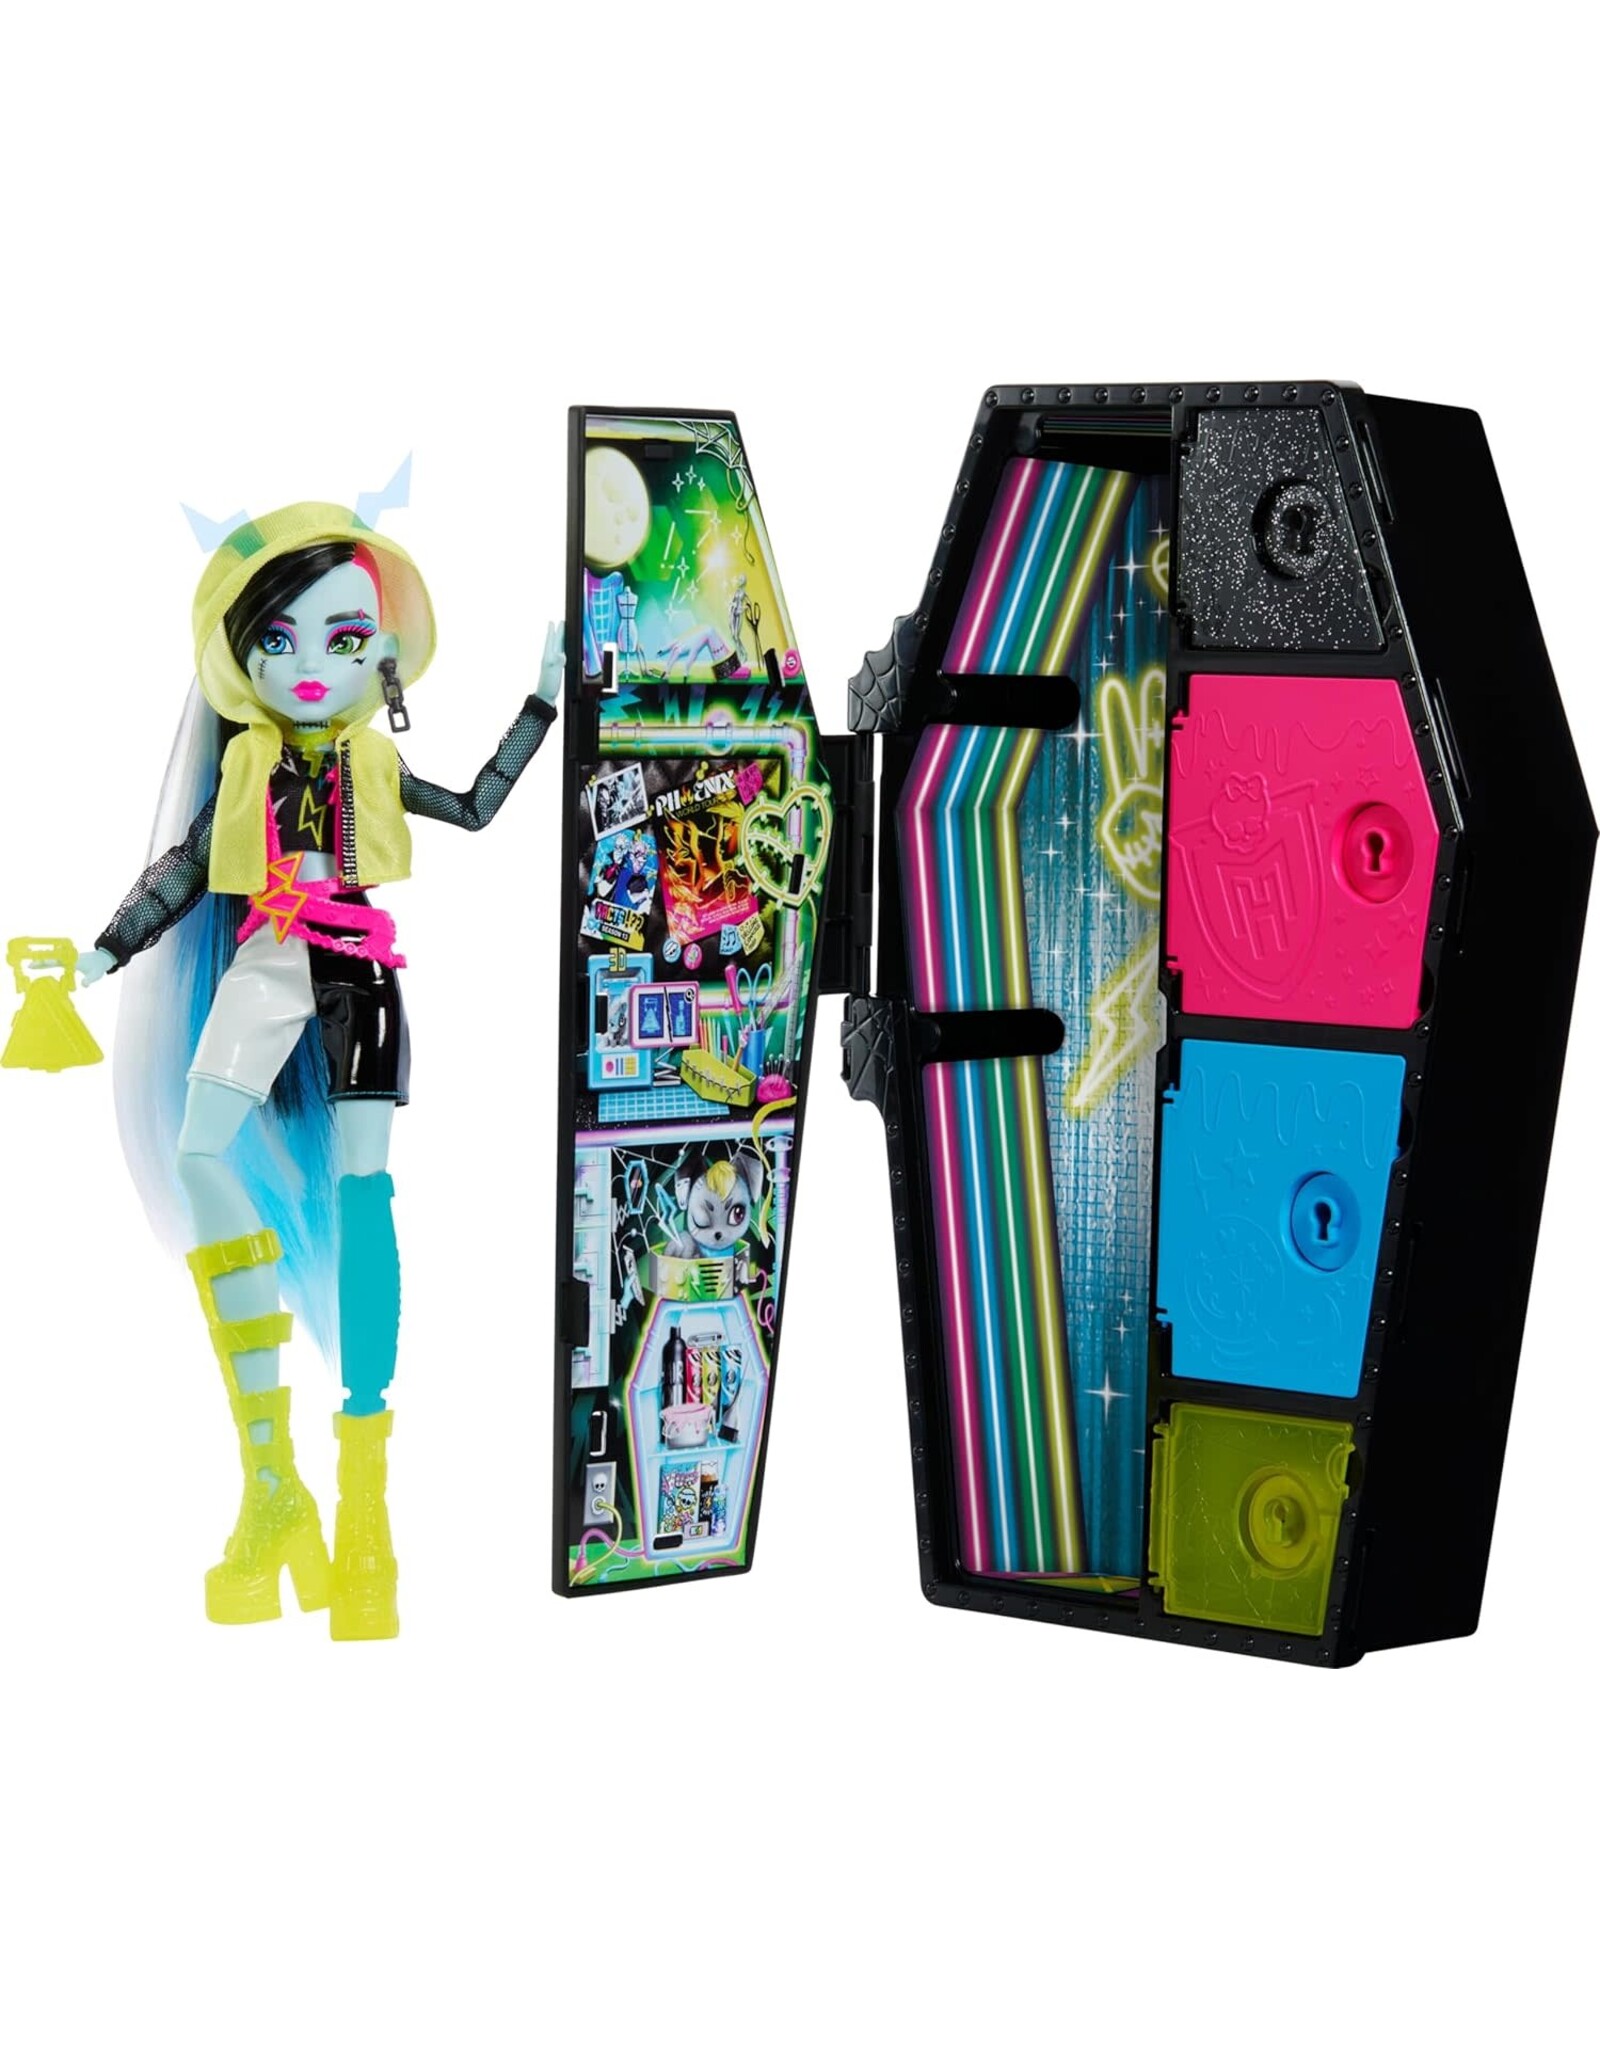 Mattel Inc. Monster High: Skulltimates Secrets 3: Frankie